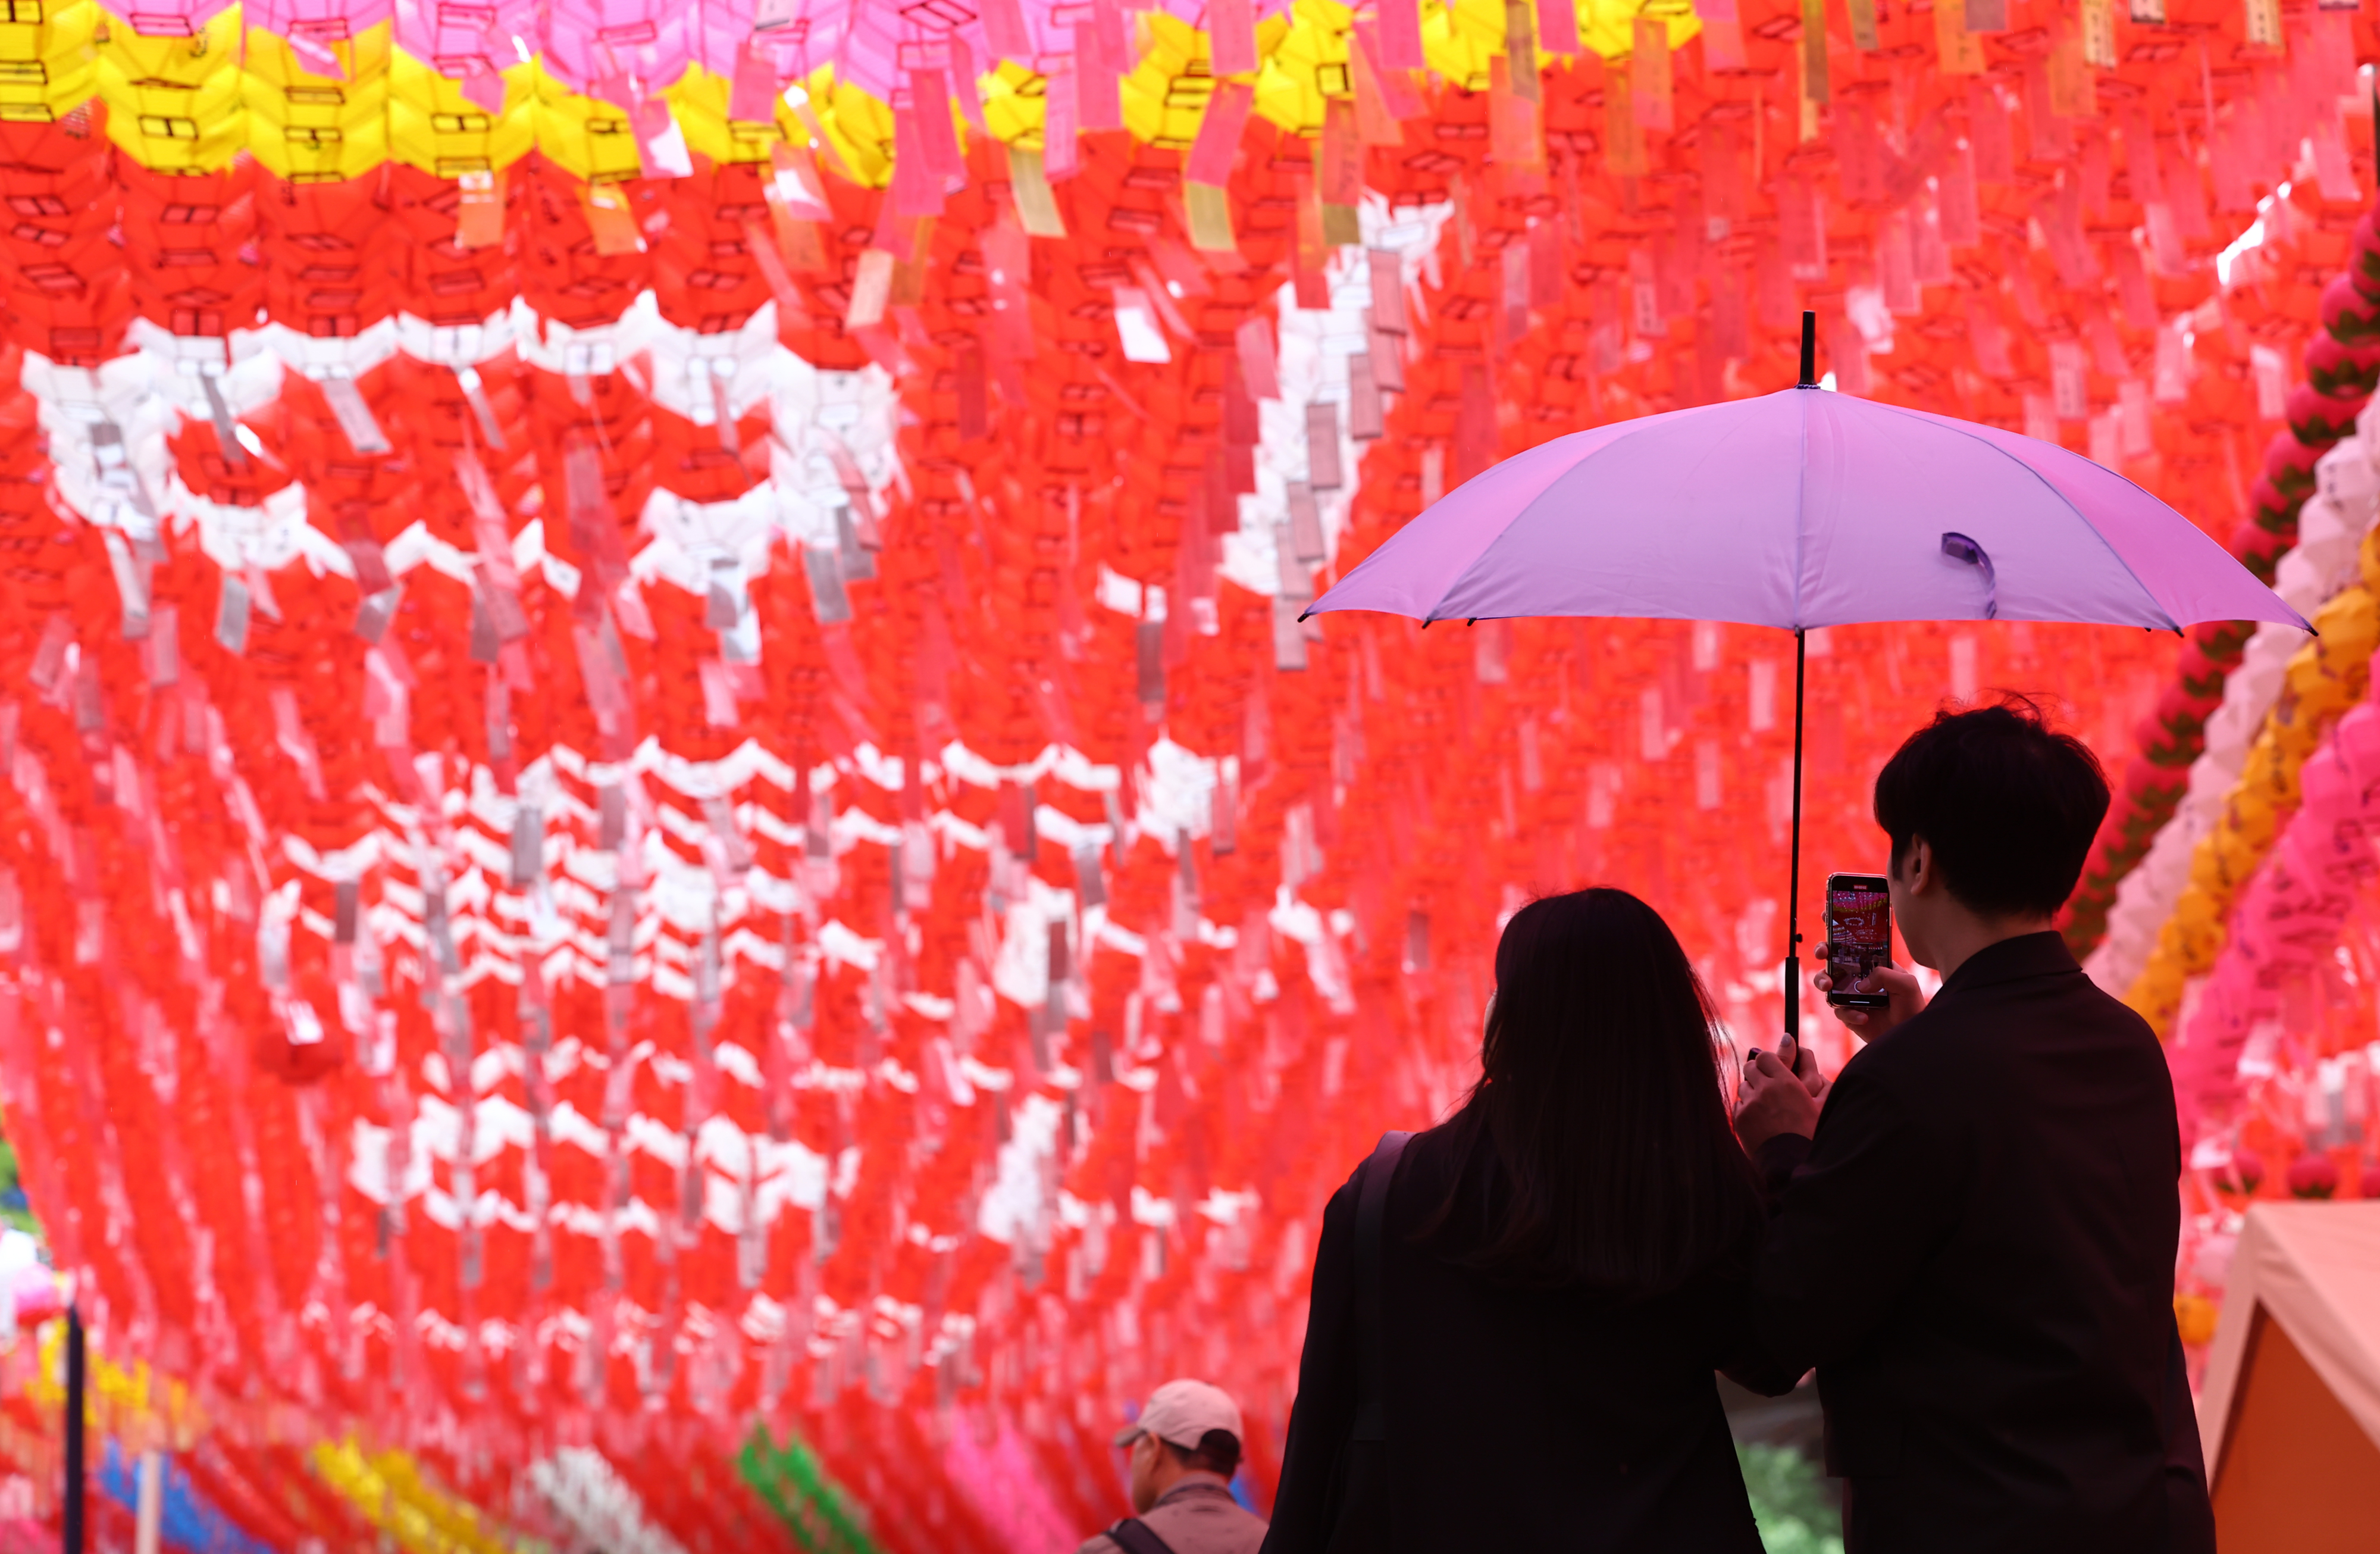 11일 오후 6시부터 서울 종로와 조계사에서 부처님오신날 연등 행사가 개최되면서 일대 교통 통제가 이뤄진다. 사진은 서울 종로구 조계사에 연등이 설치된 모습. 연합뉴스